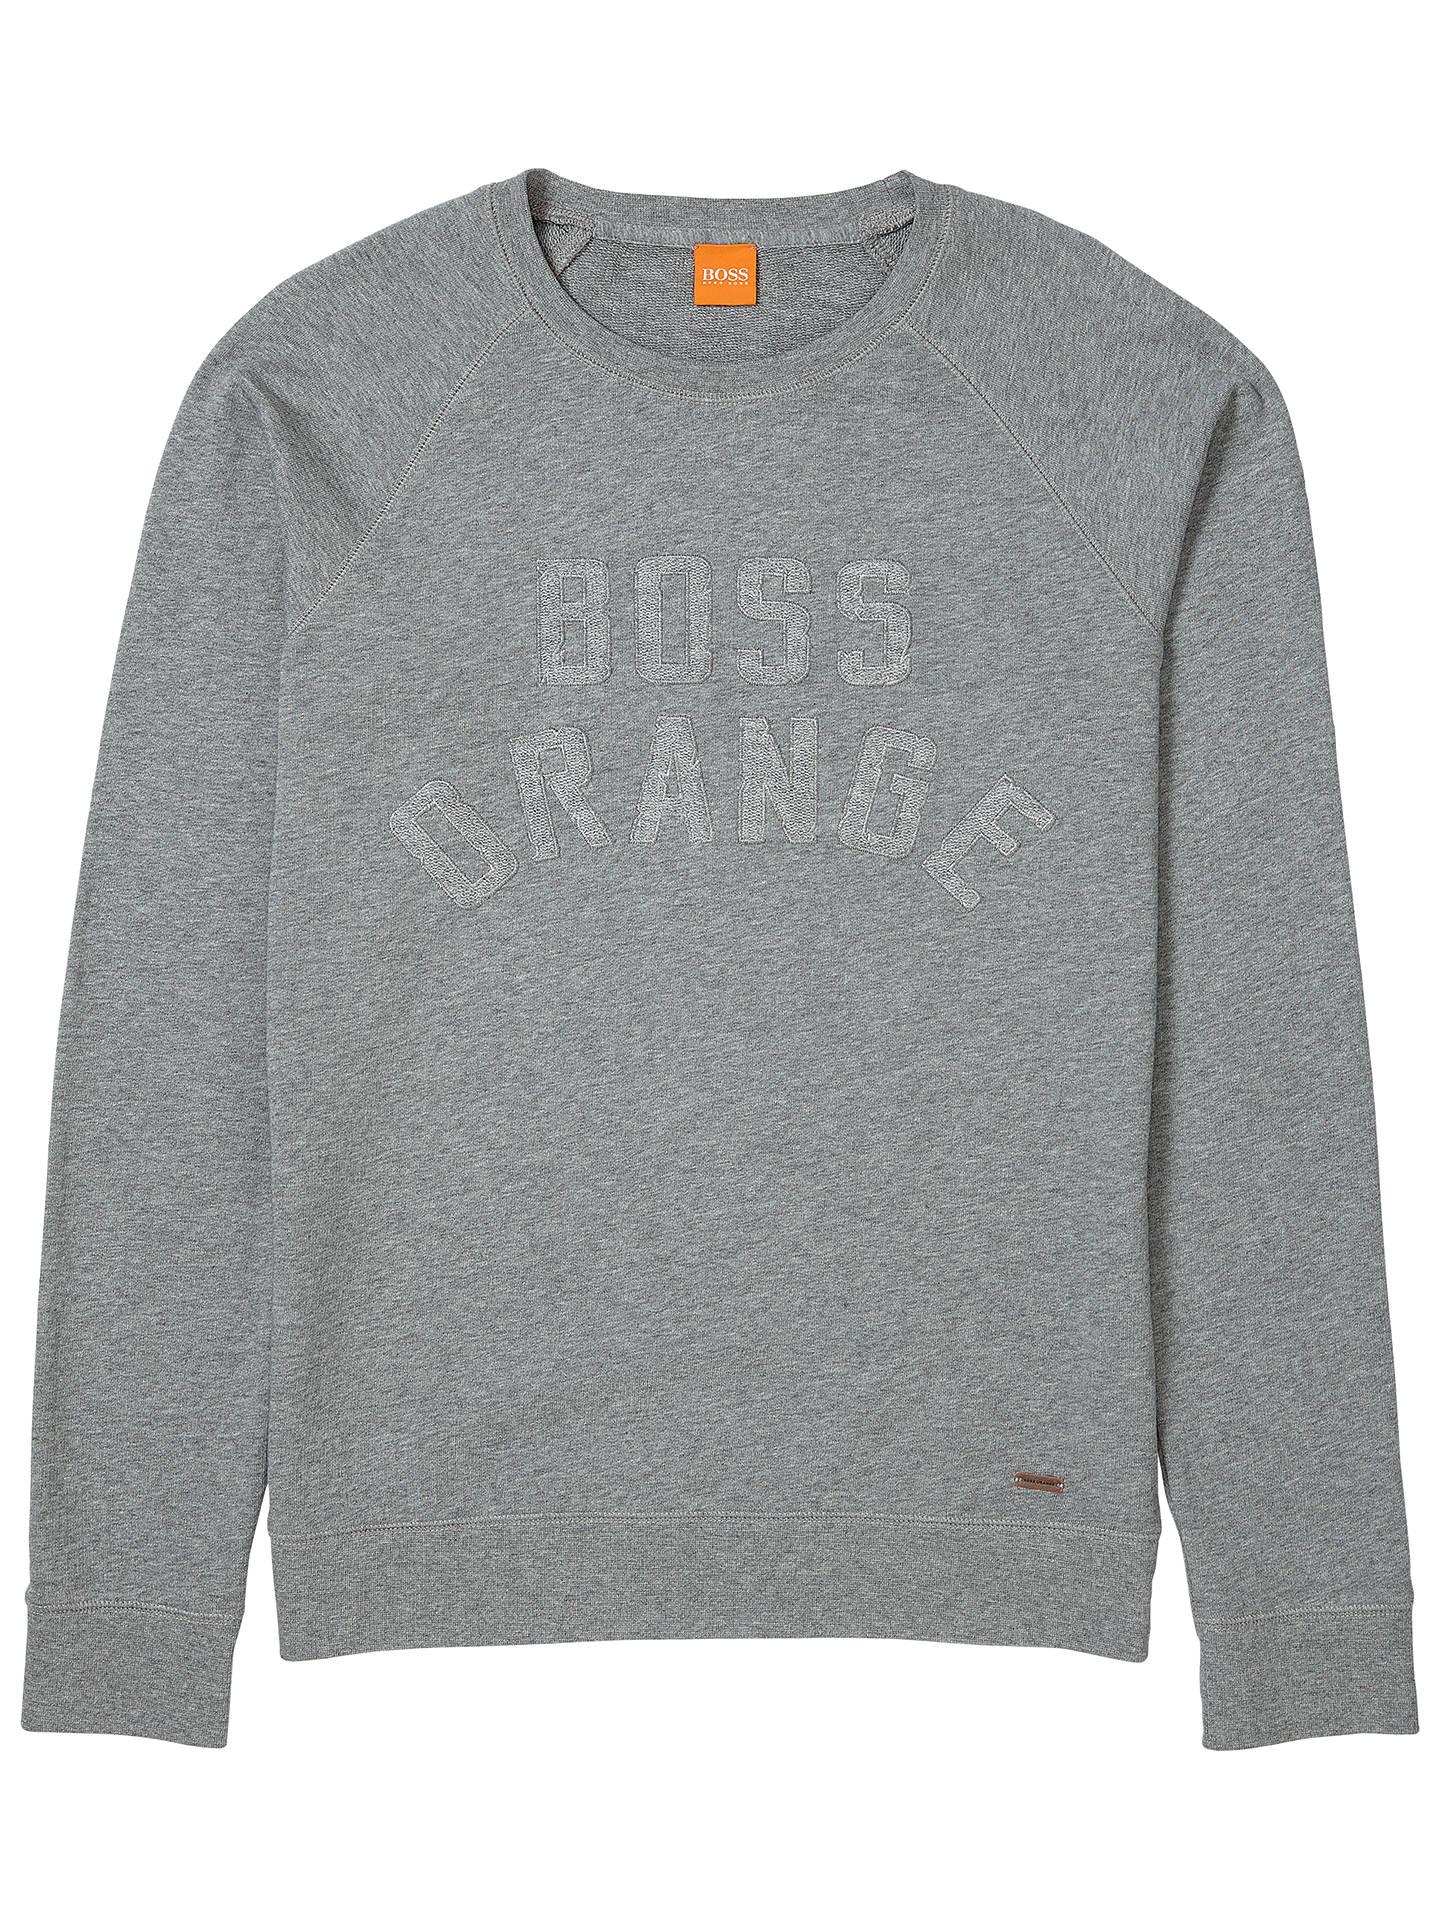 Pastel Orange Logo - BOSS Orange Wilkens Logo Sweatshirt, Light Pastel Grey at John Lewis ...